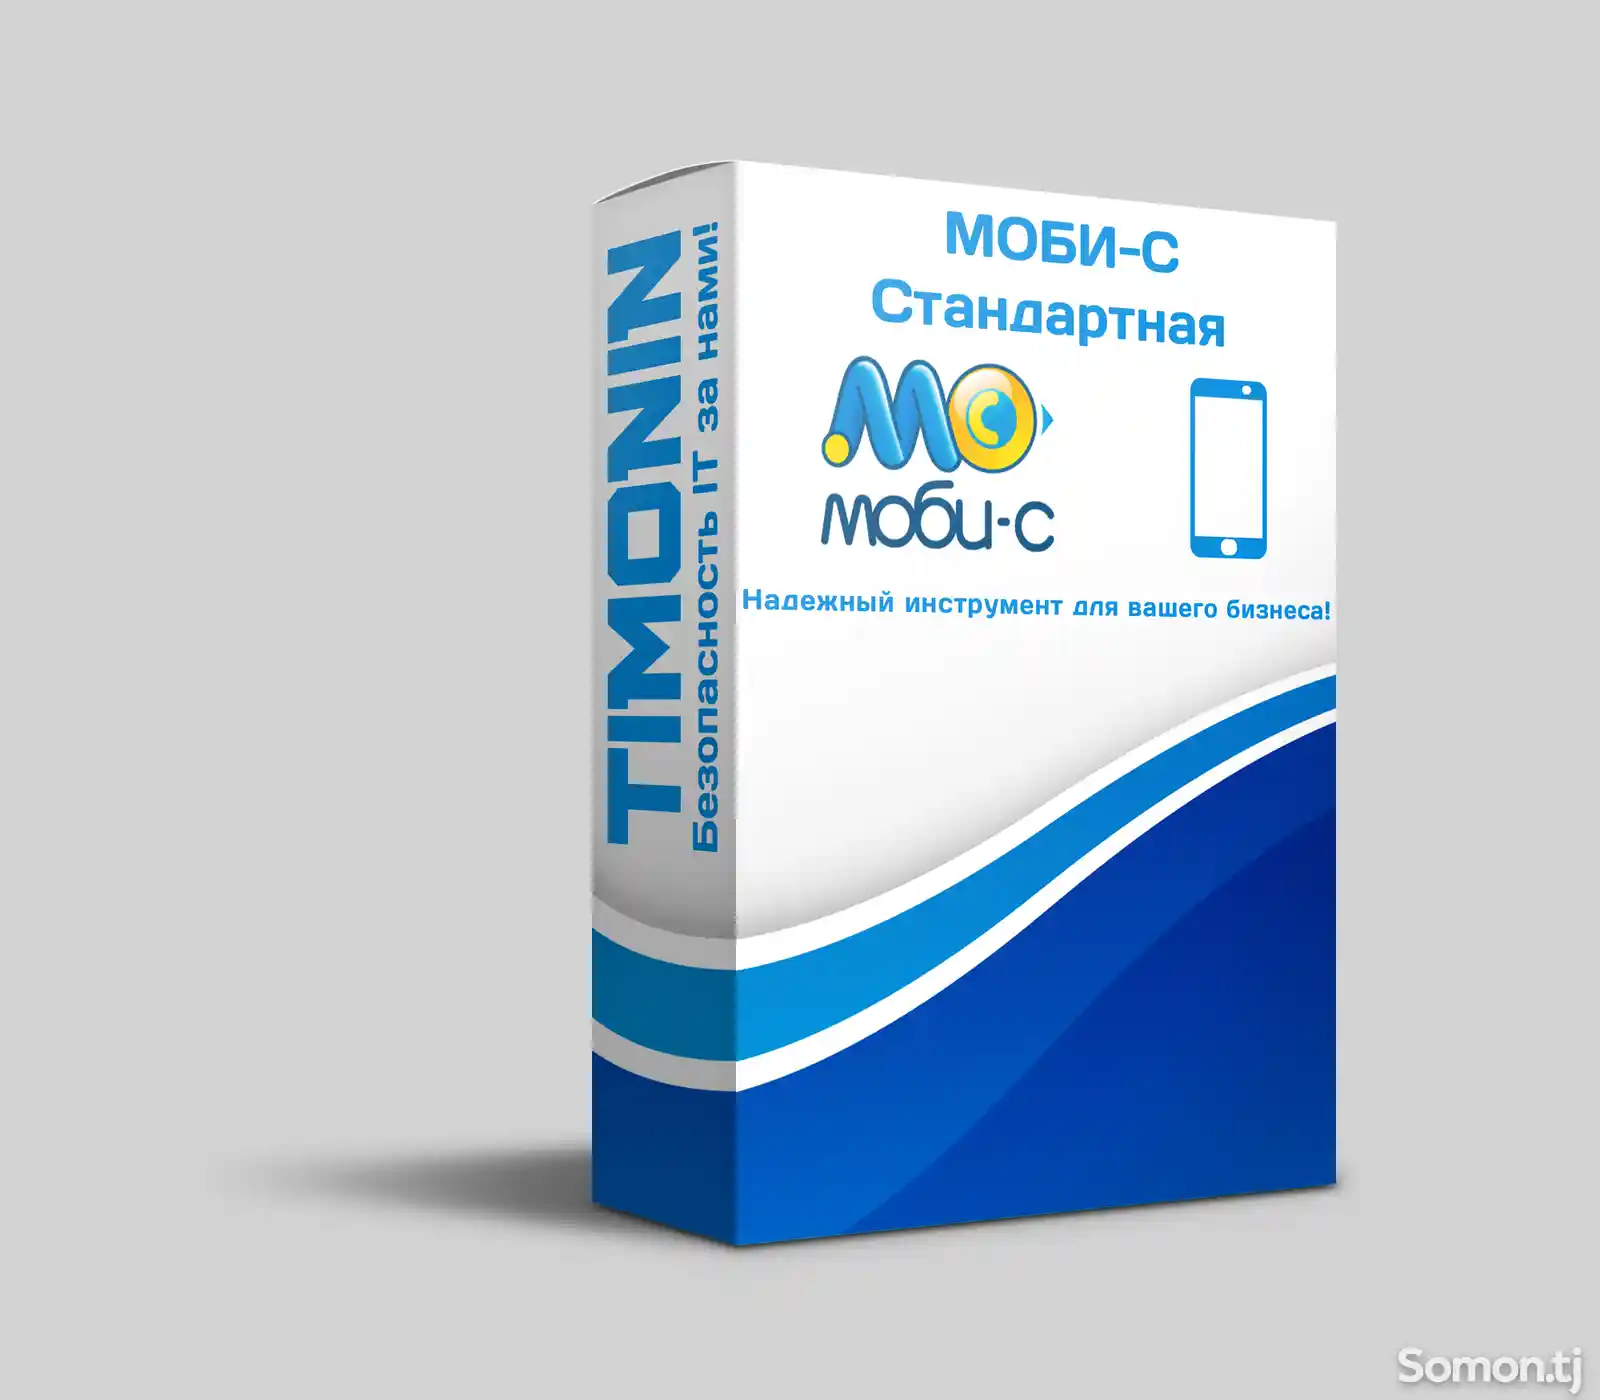 Программа Mobi-C стандарт